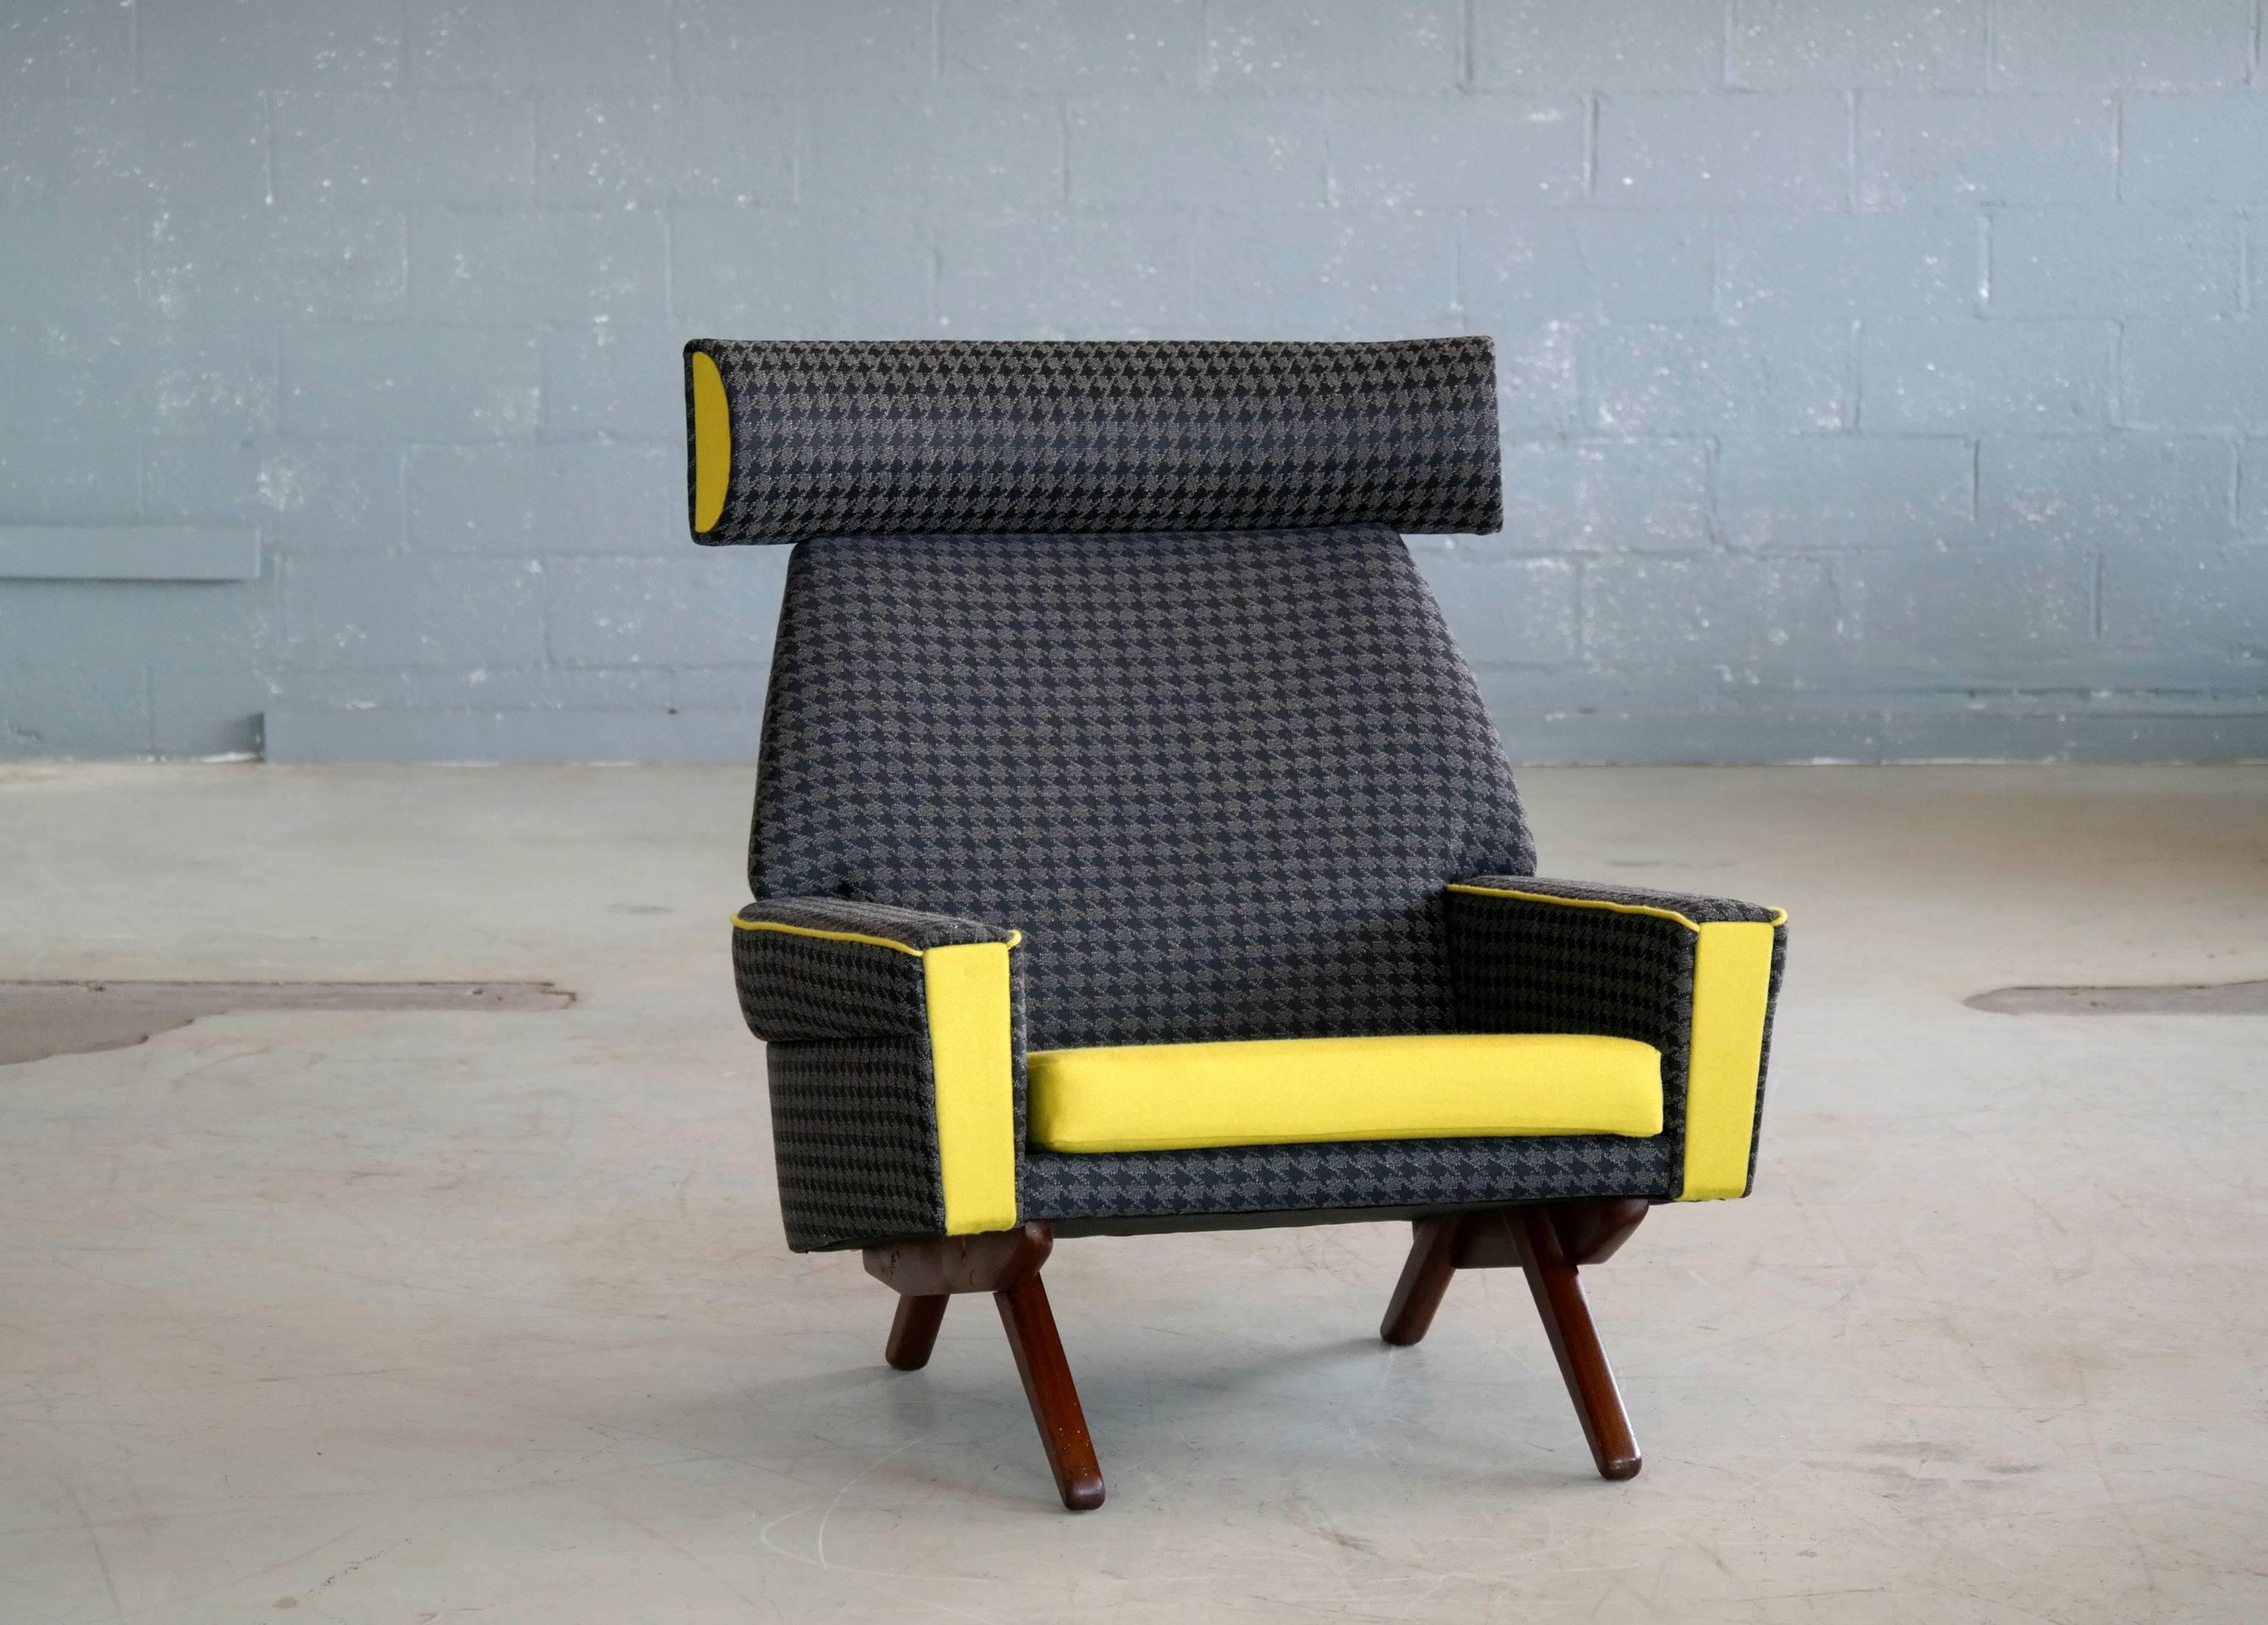 Dieser seltene Stuhl wurde Anfang der 1960er Jahre von Leif Hansen entworfen und von Kronen hergestellt. Kronen war ein kurzlebiger Hersteller hochwertiger dänischer Möbel aus der Mitte des Jahrhunderts, der hauptsächlich Entwürfe von Leif Hansen